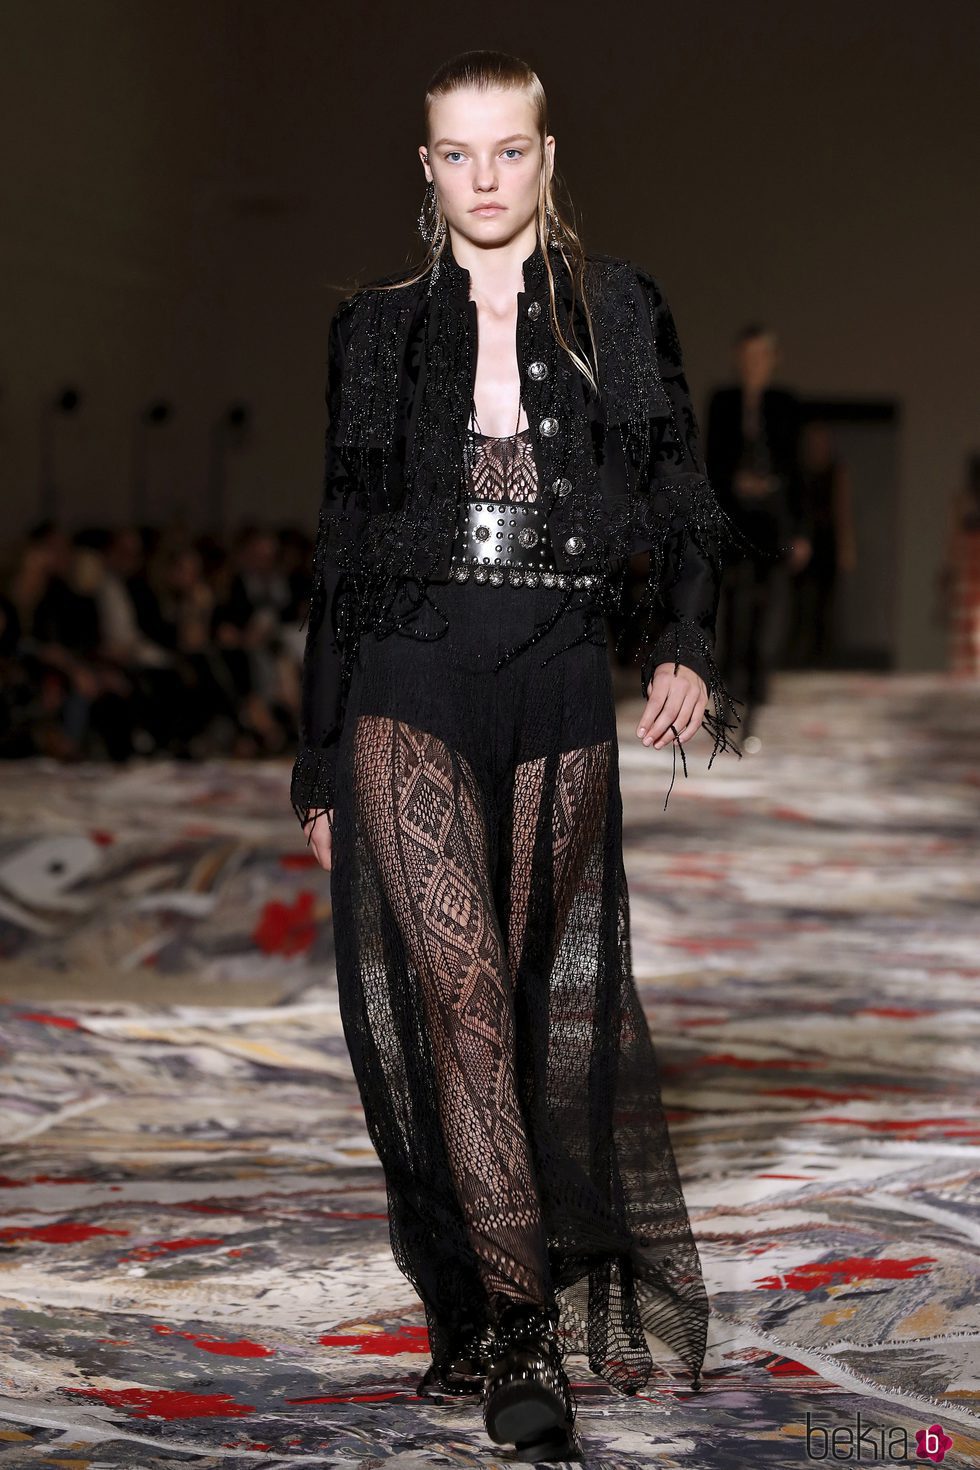 Vestido negro con falda transparente en el desfile de Alexander MCqueen en la Paris Fashion Week 2016